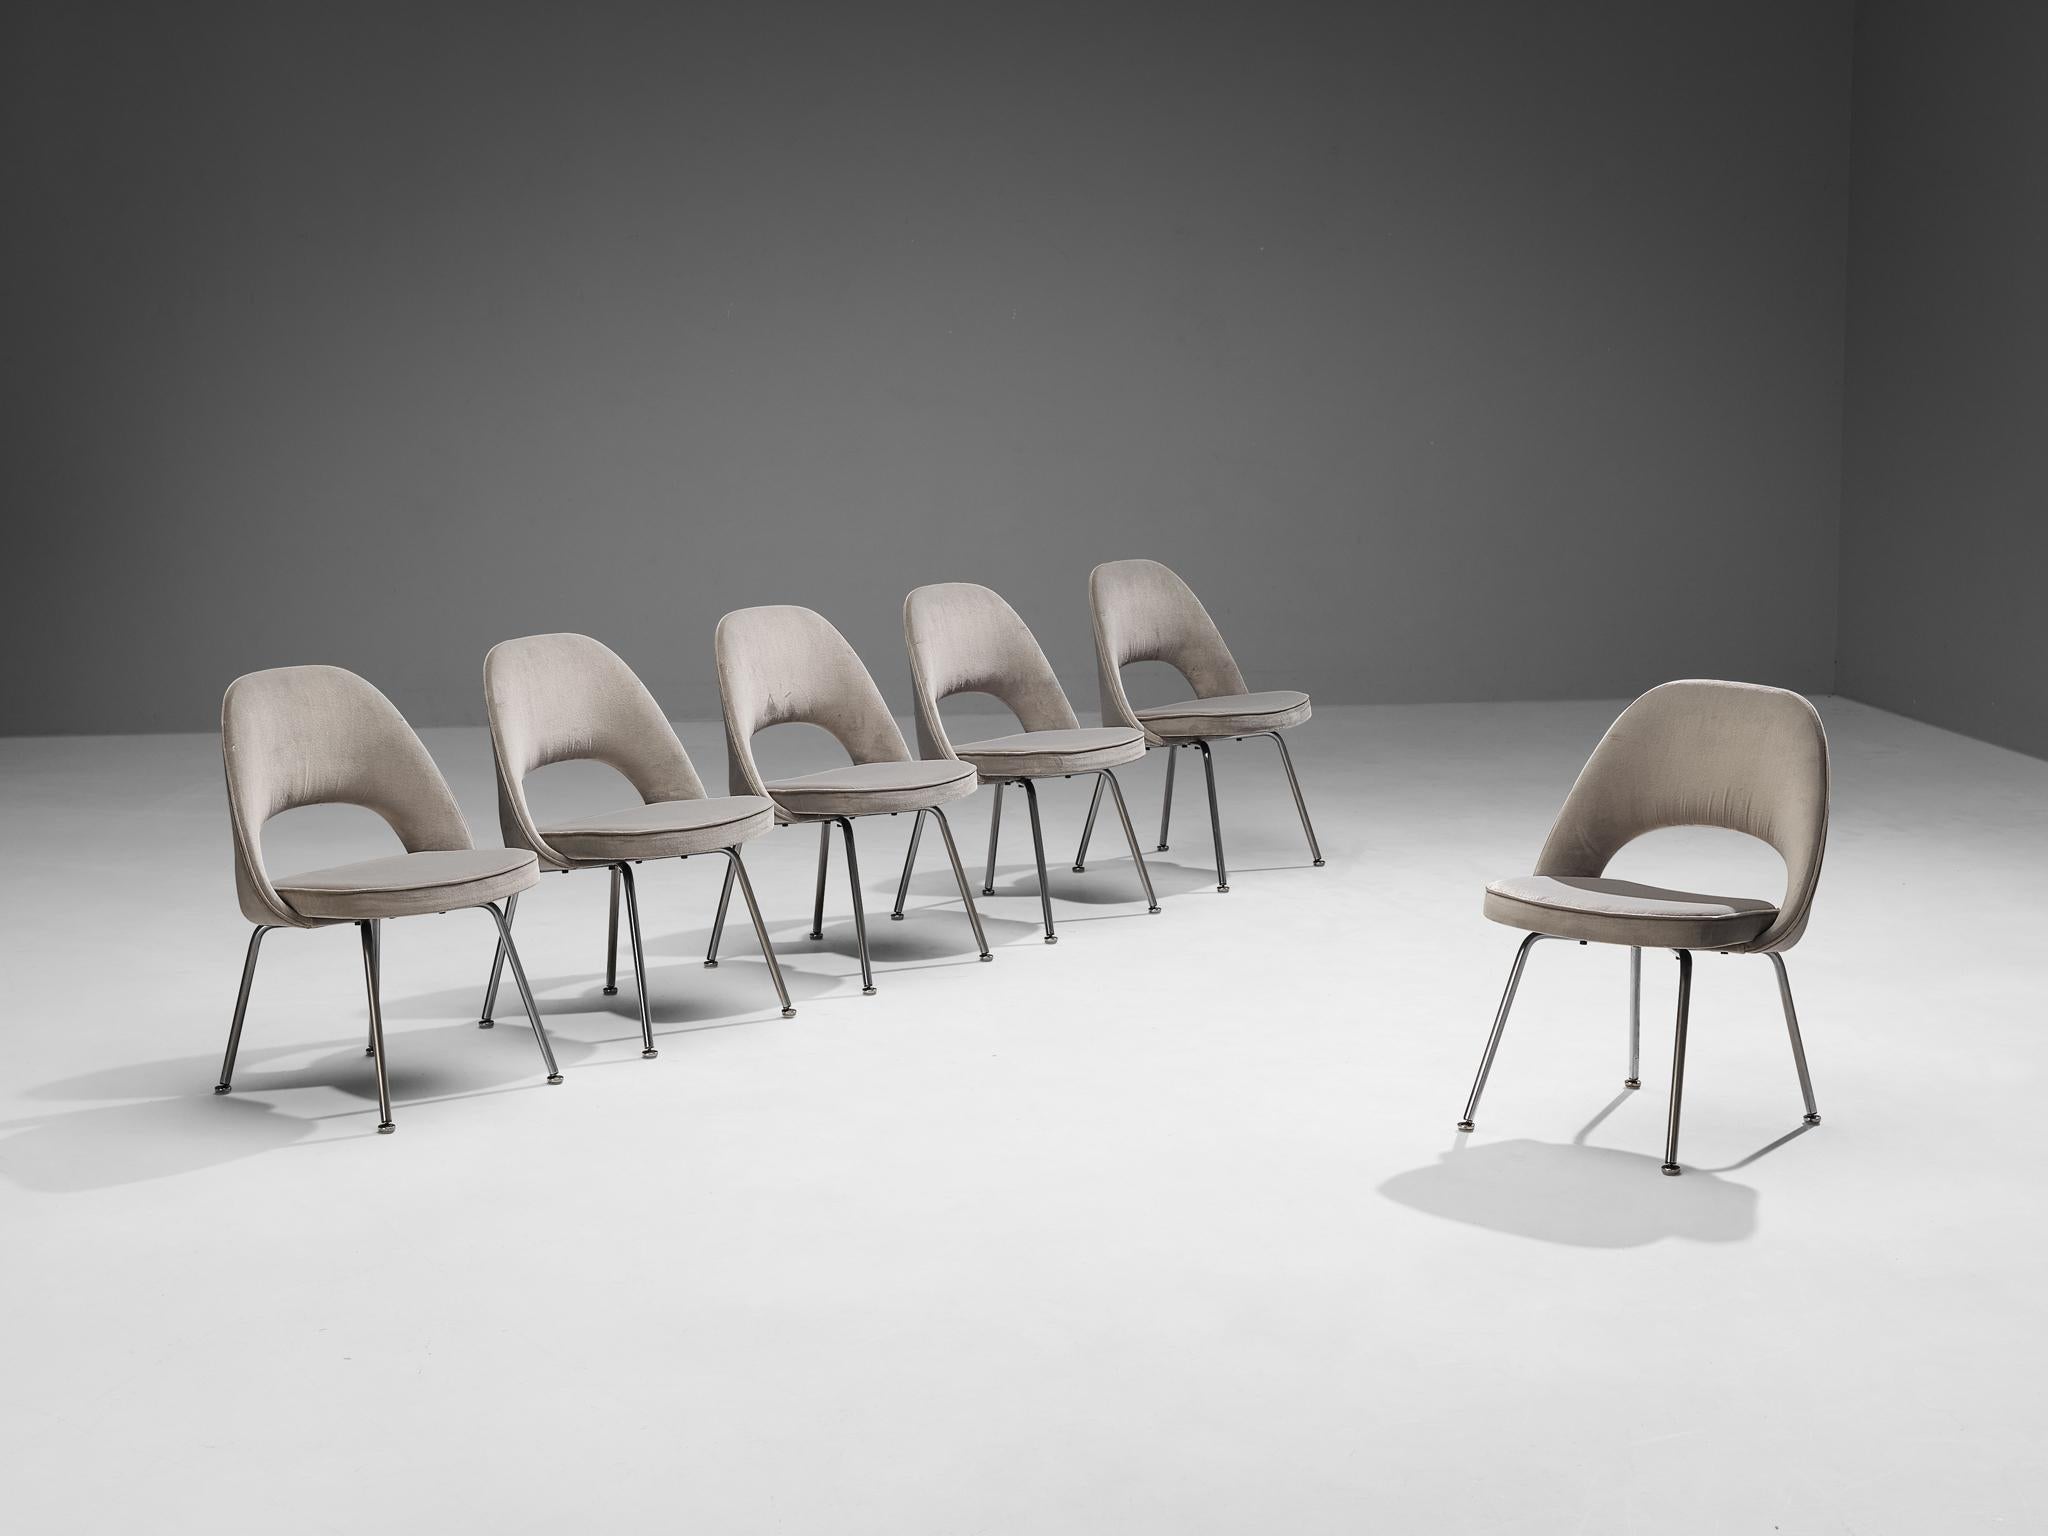 Eero Saarinen pour Knoll International, ensemble de six chaises de salle à manger, modèle 72, acier chromé, velours, États-Unis, design 1948, production ultérieure

Ensemble de six chaises de forme organique conçues par Eero Saarinen. Une forme